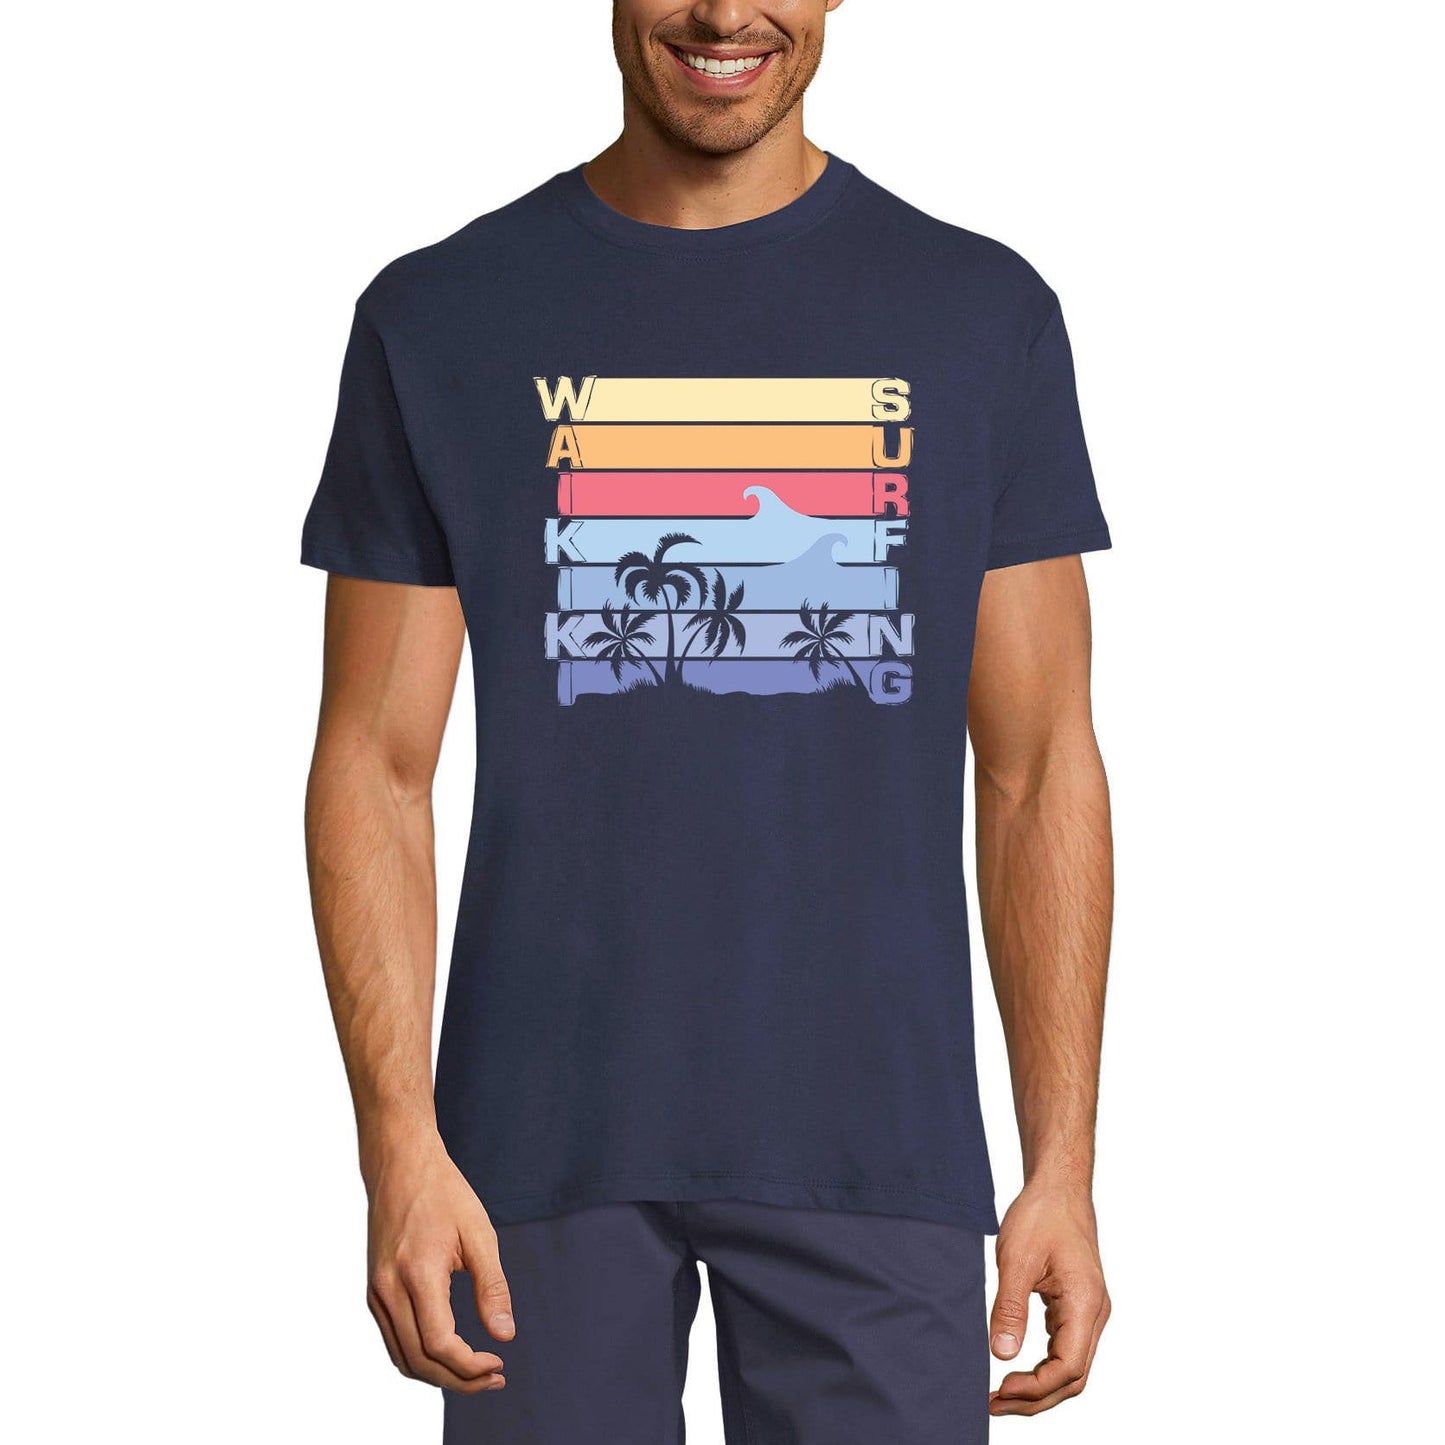 ULTRABASIC Men's Novelty T-Shirt Waikiki Surfing Tee Shirt